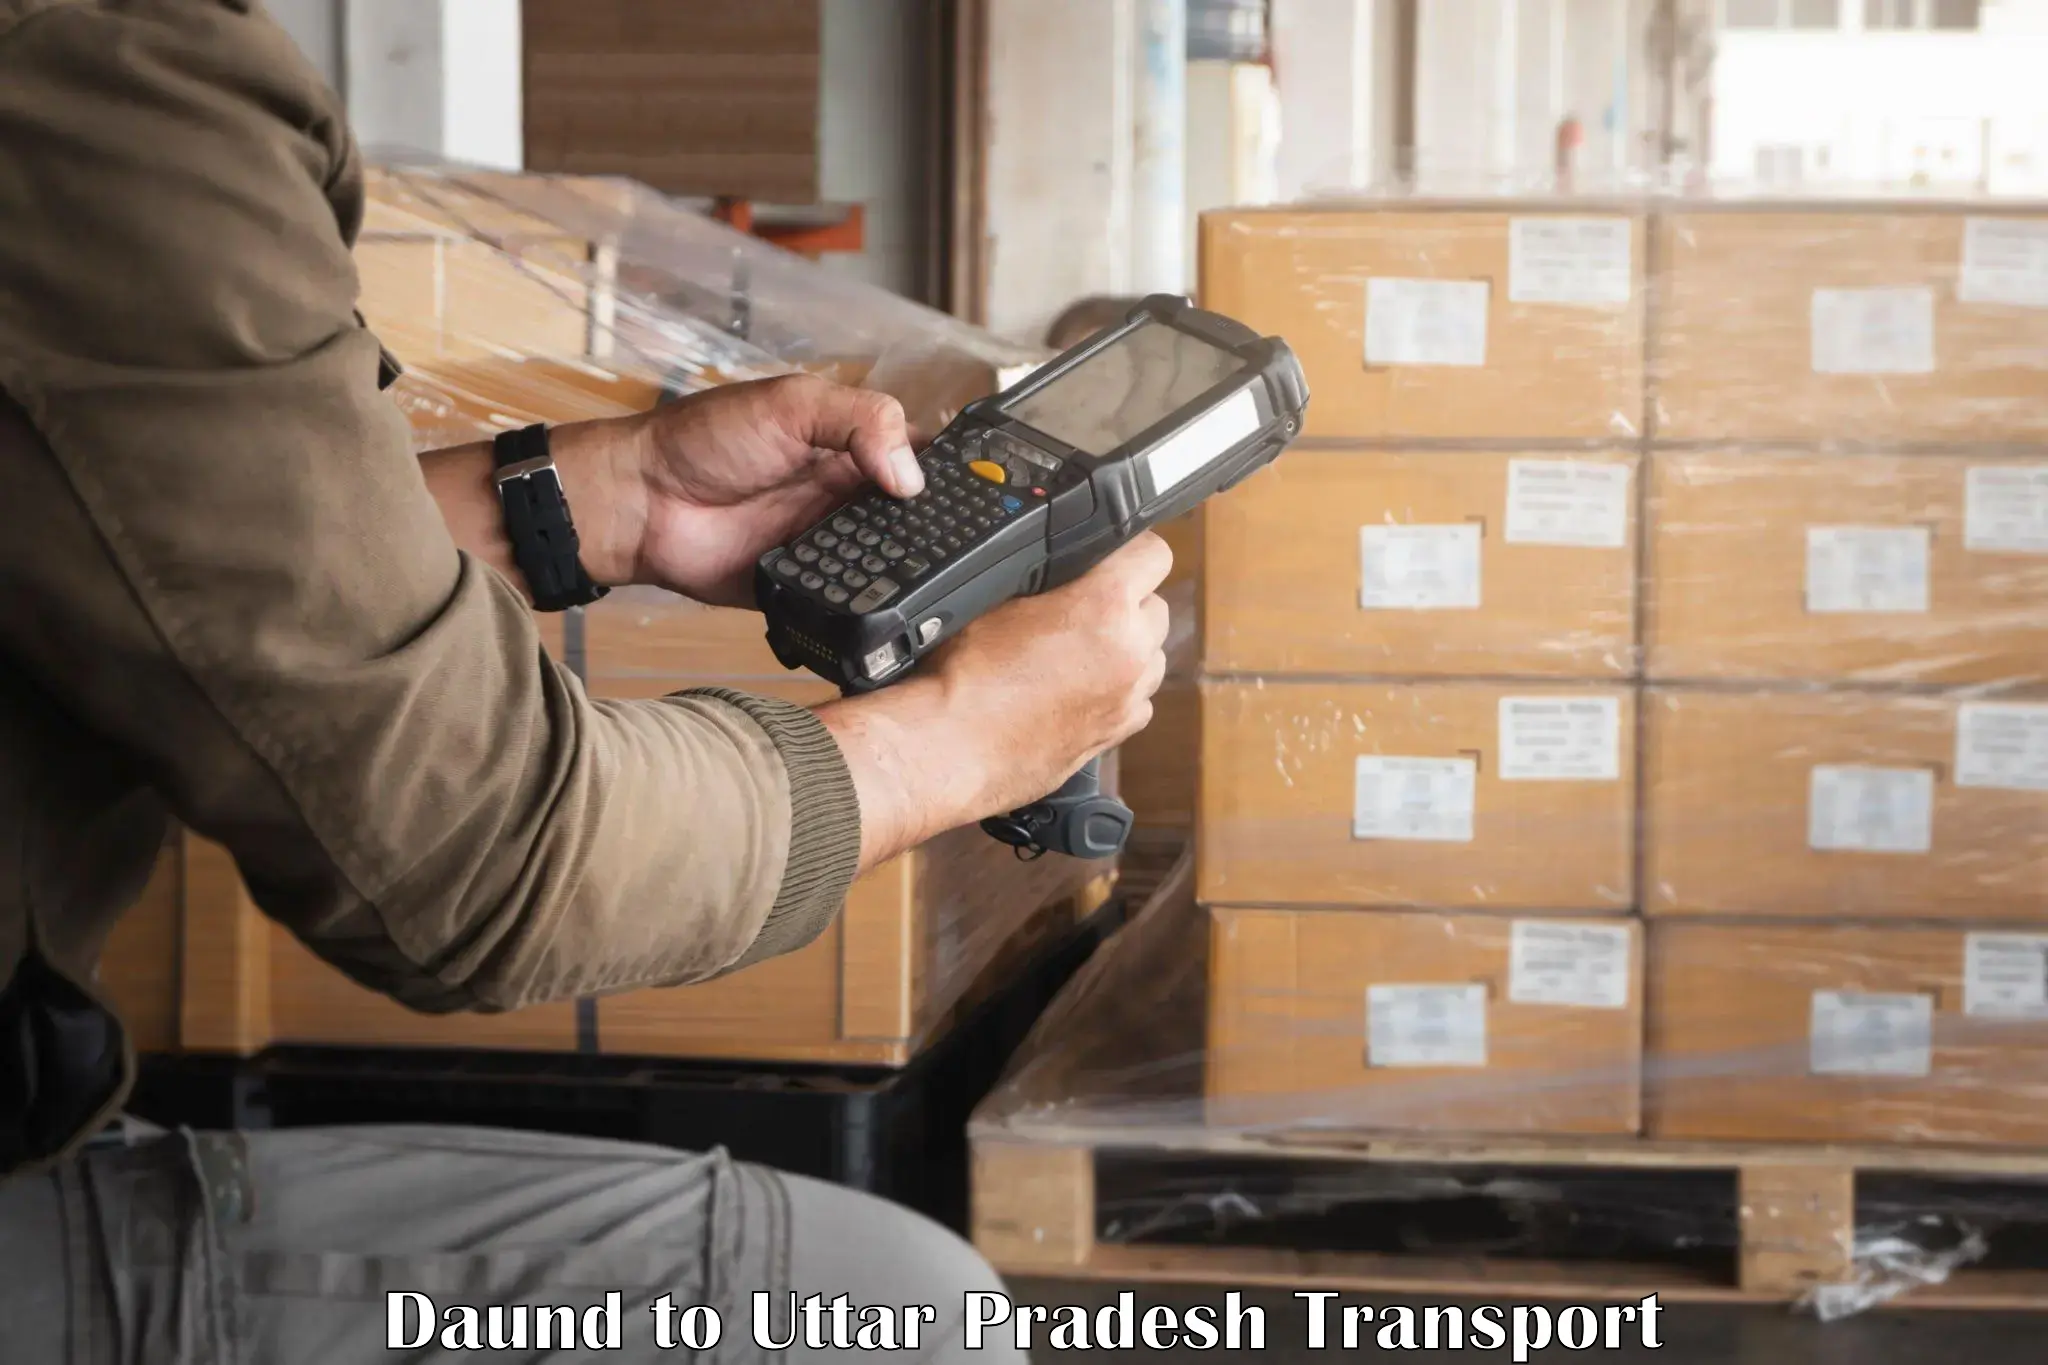 Truck transport companies in India Daund to Naugarh